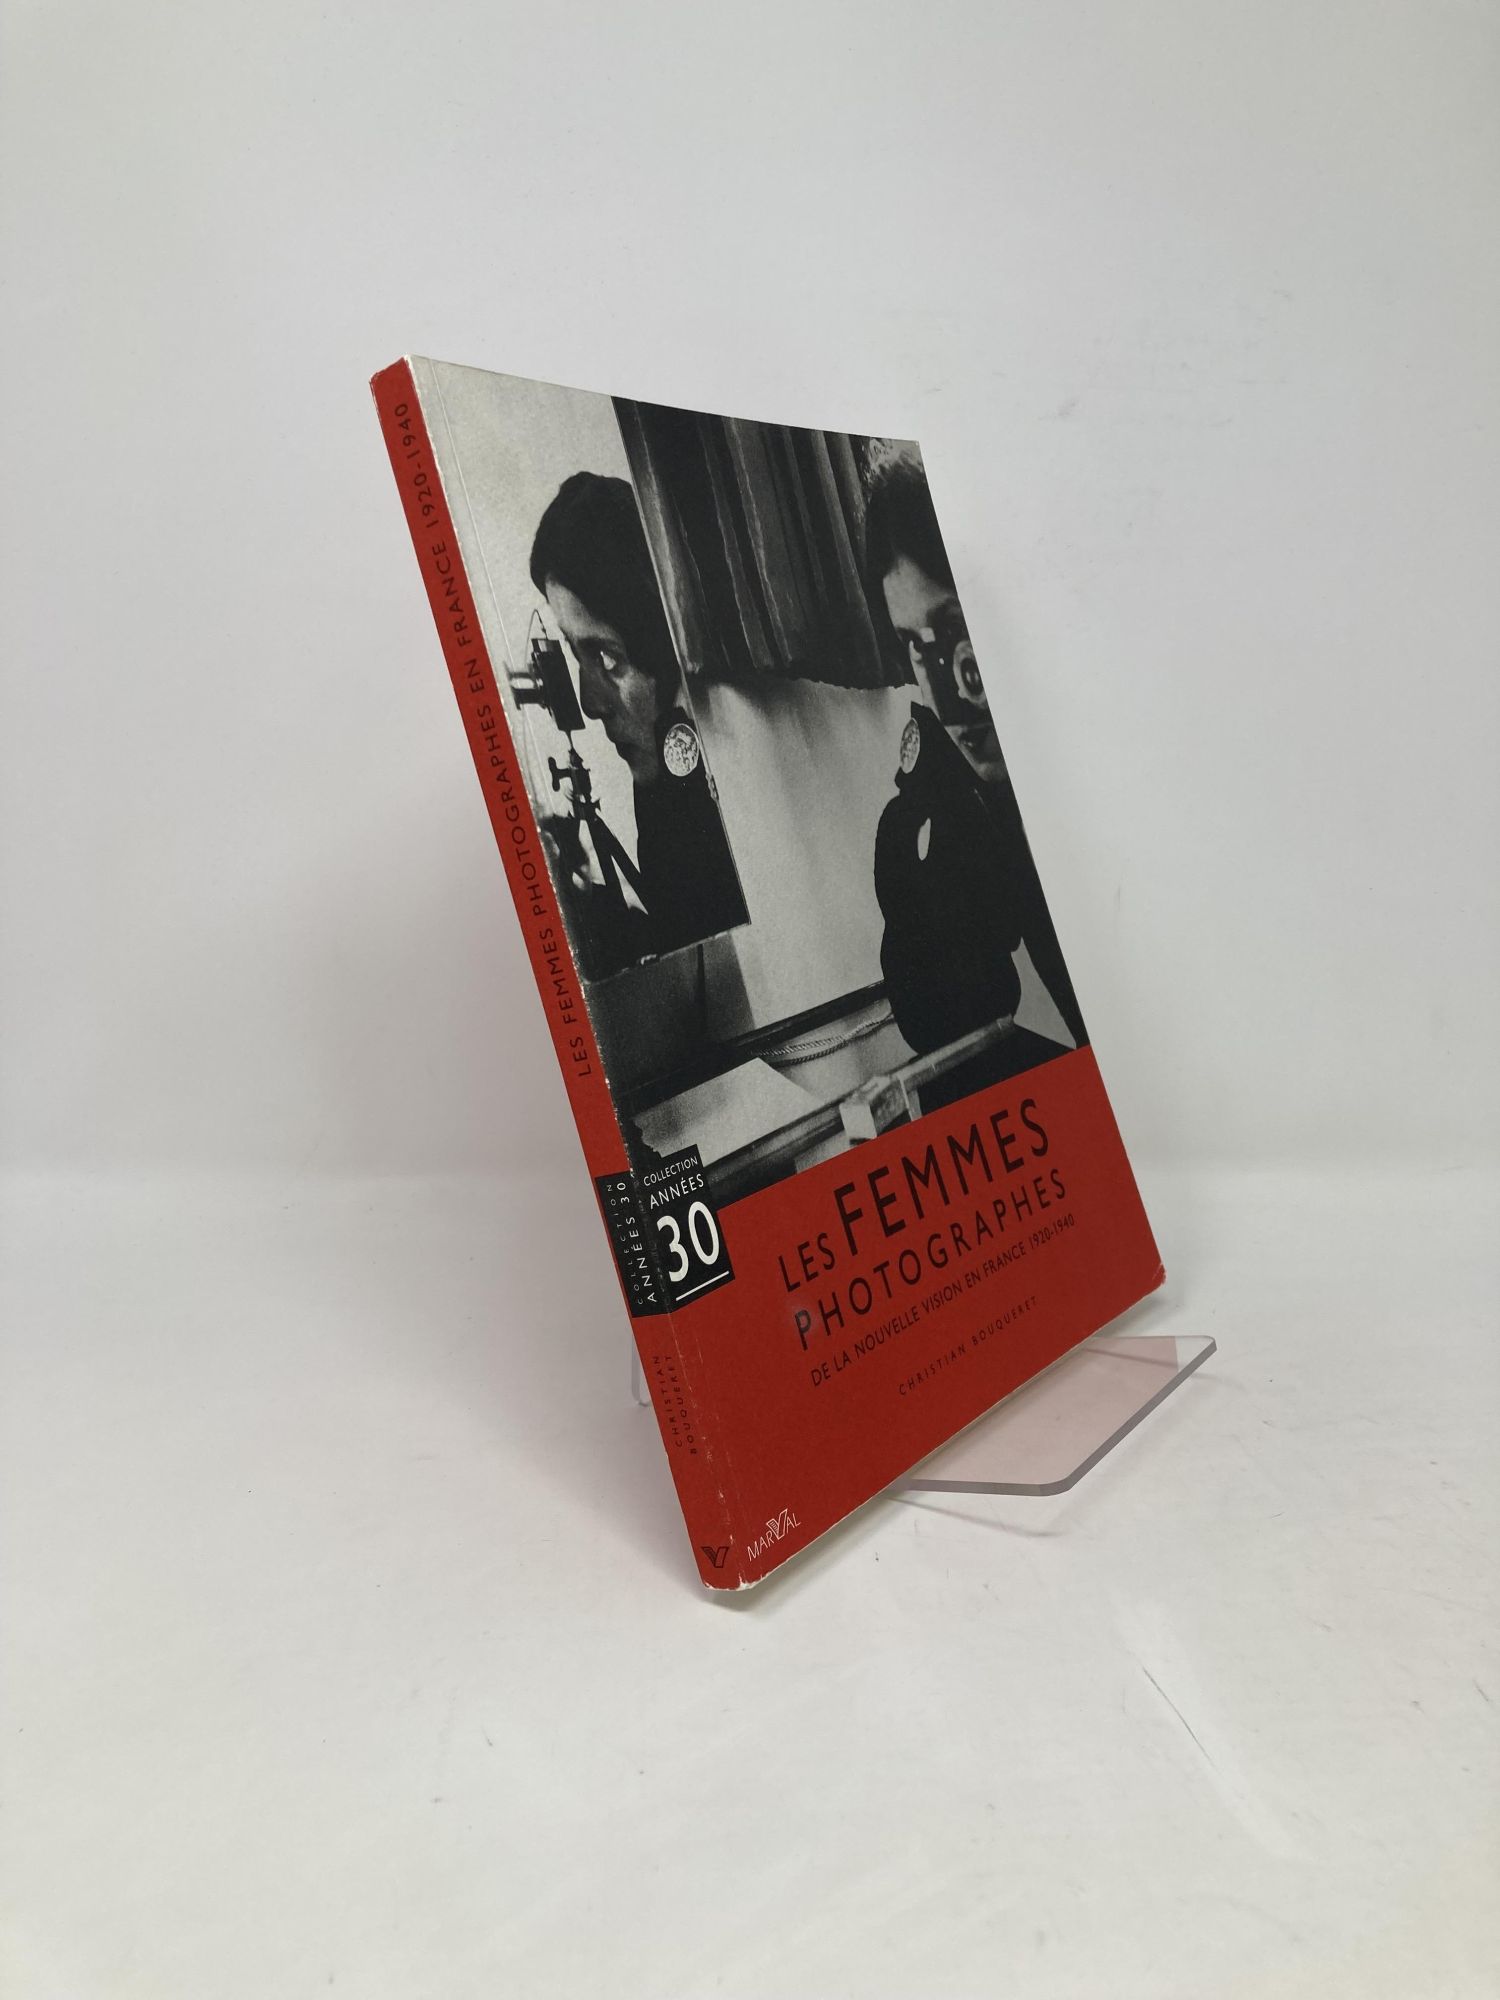 Les femmes photographes: De la nouvelle vision en France, 1920-1940 (Collection Années 30) (French Edition) - Bouqueret, Christian